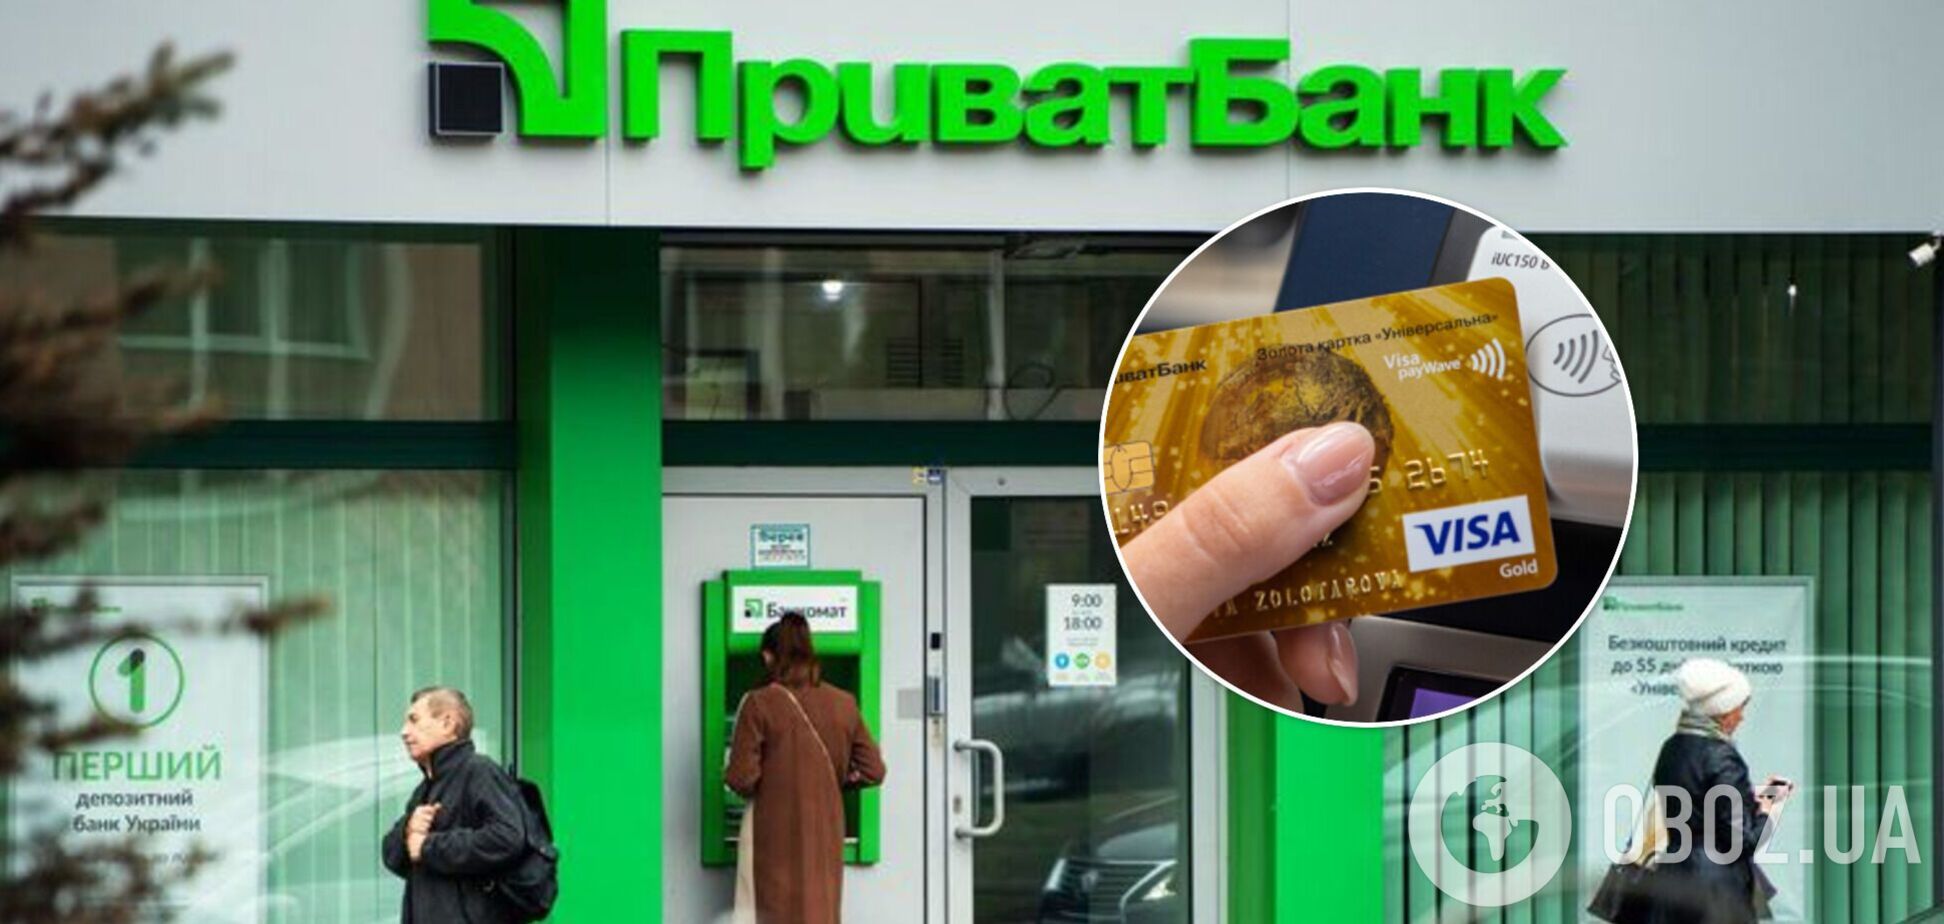 В 'ПриватБанке' произошел сбой: возможны проблемы в работе банкоматов и при оплате картами